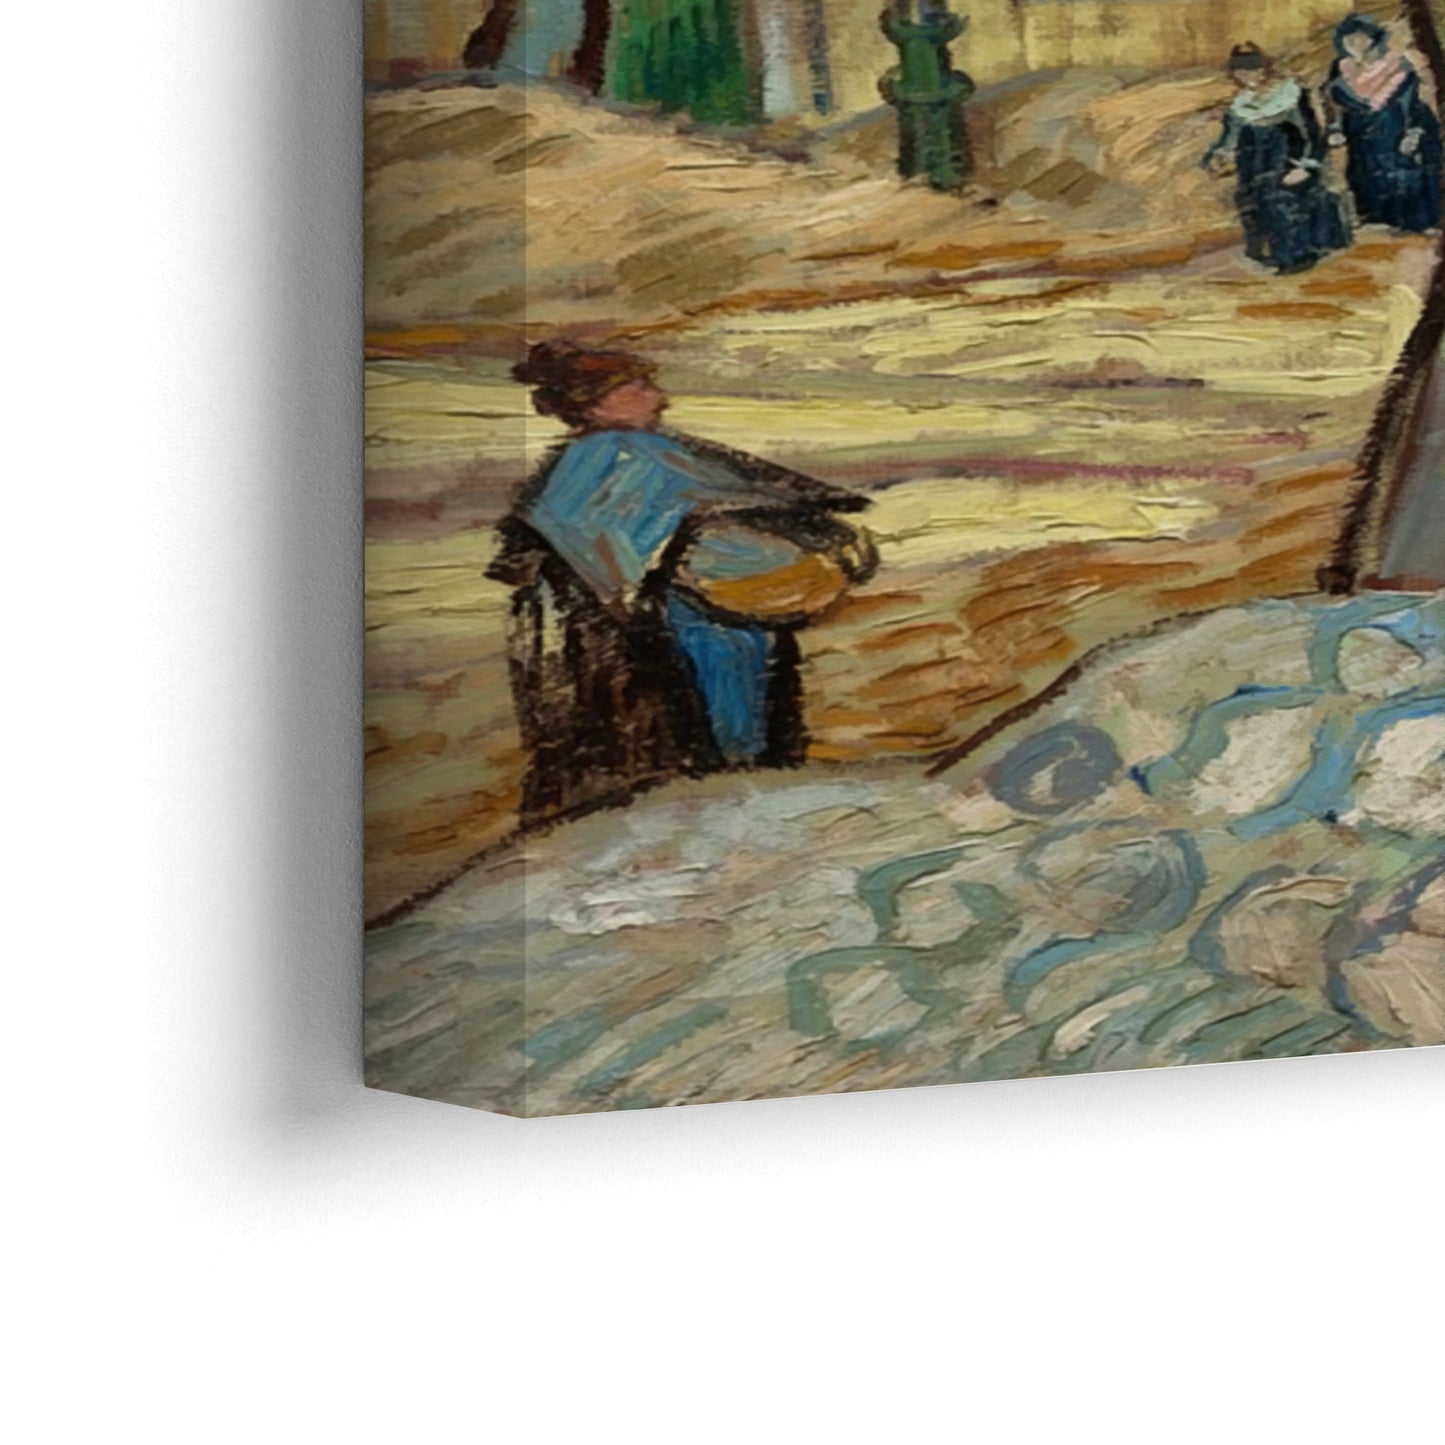 A nagy platánfák, Vincent Van Gogh